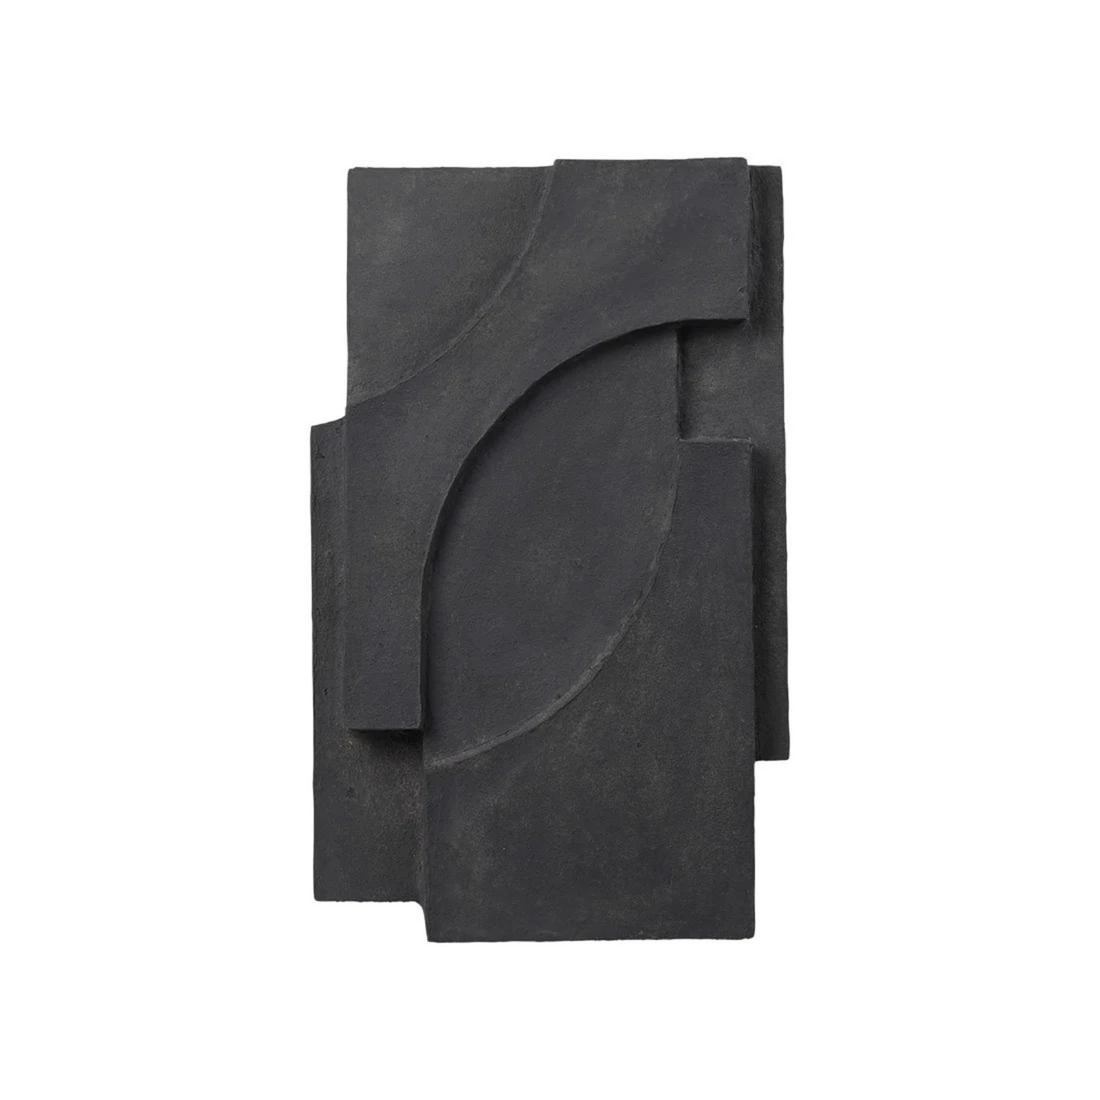 Serif Relief | Sculpt Art